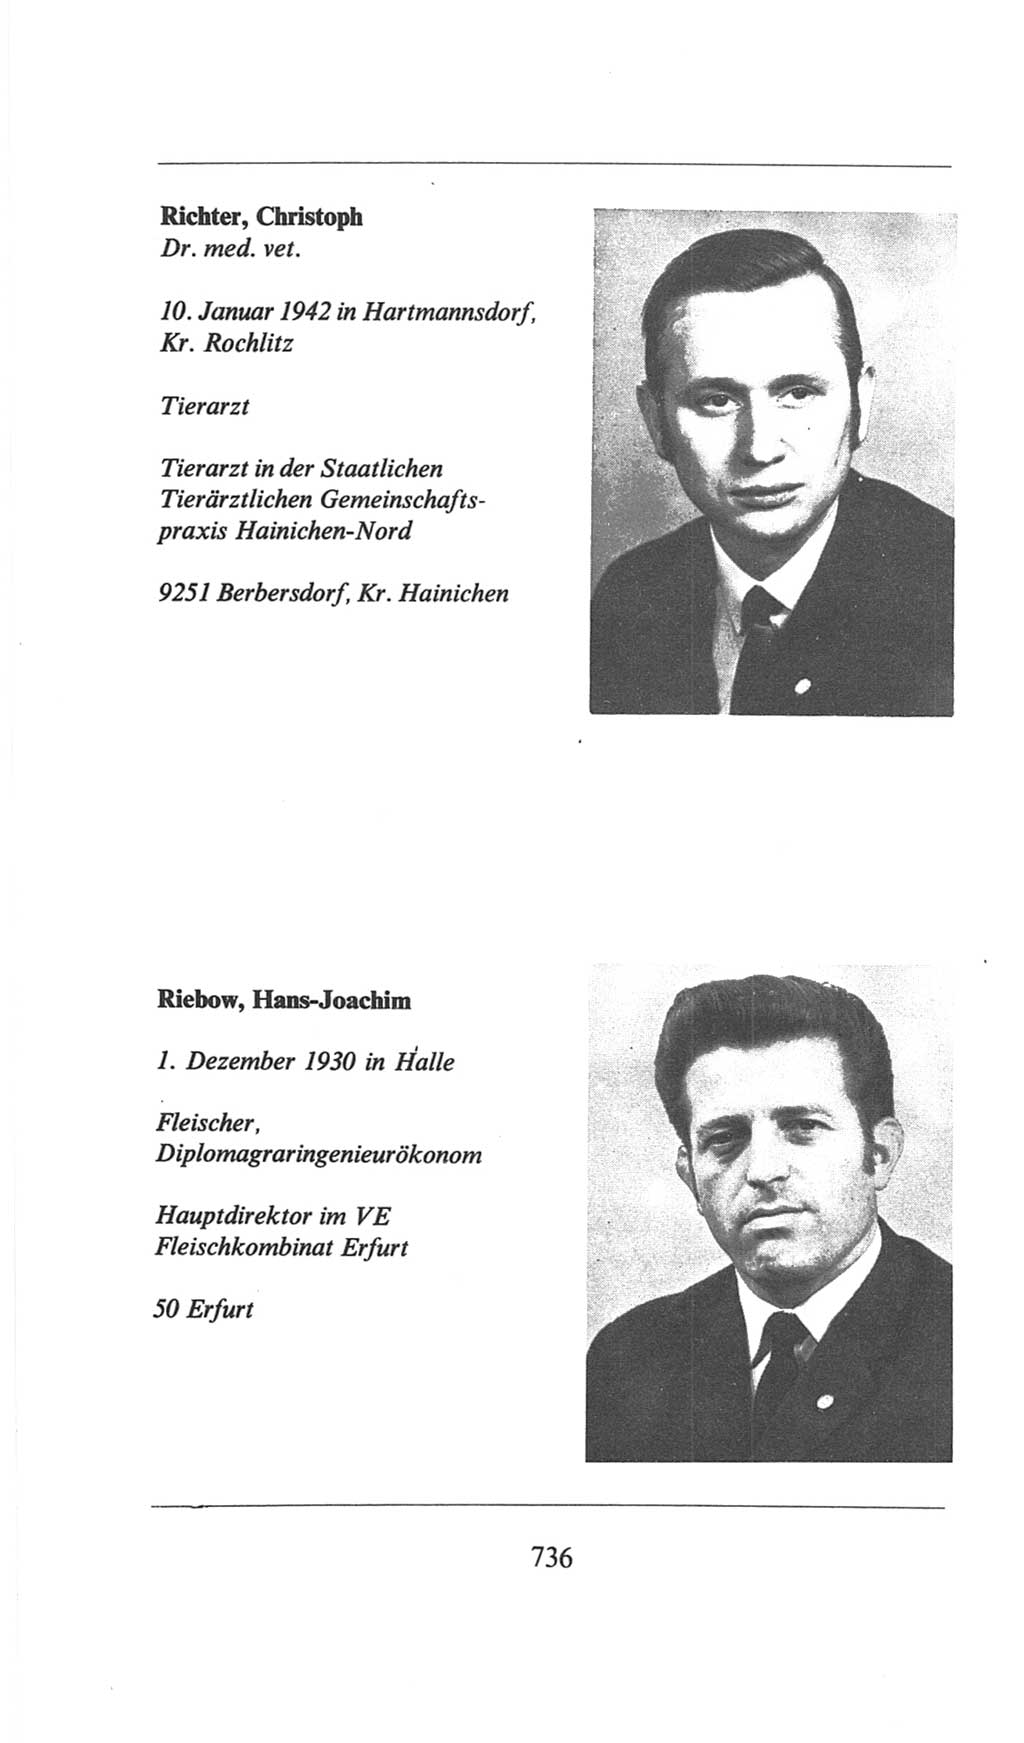 Volkskammer (VK) der Deutschen Demokratischen Republik (DDR), 6. Wahlperiode 1971-1976, Seite 736 (VK. DDR 6. WP. 1971-1976, S. 736)